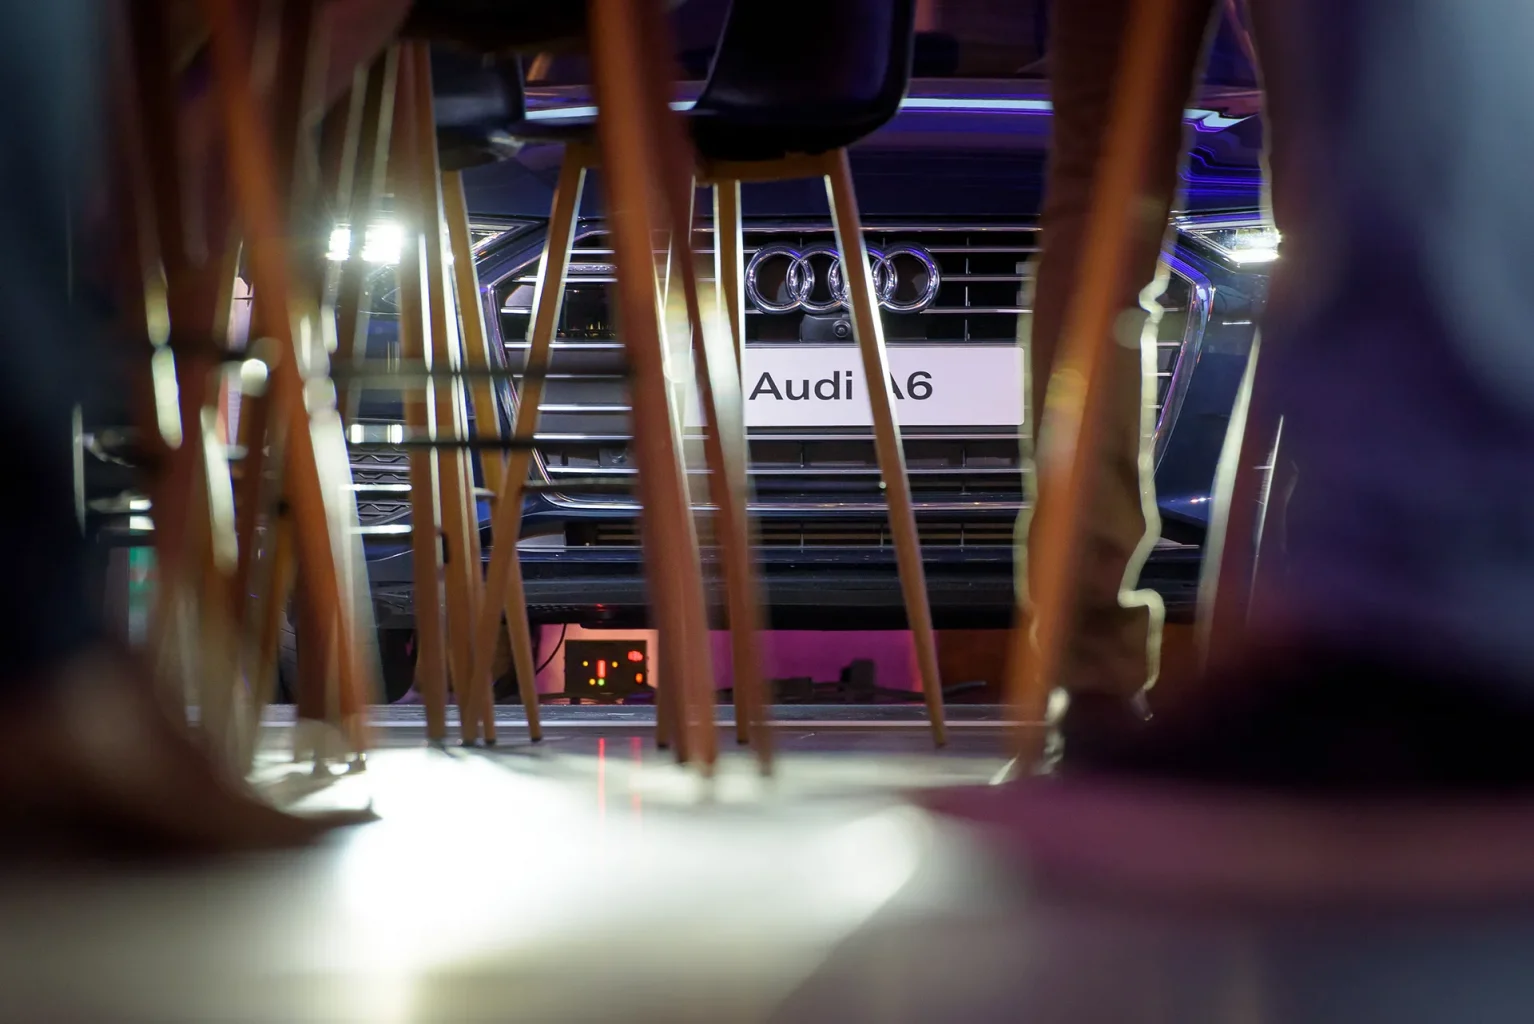 Bemutató rendezvény fotózása az Audi A6-al a háttérben békaperspektívából fotózva, az előtérben rendezvény székeinek lábaival.